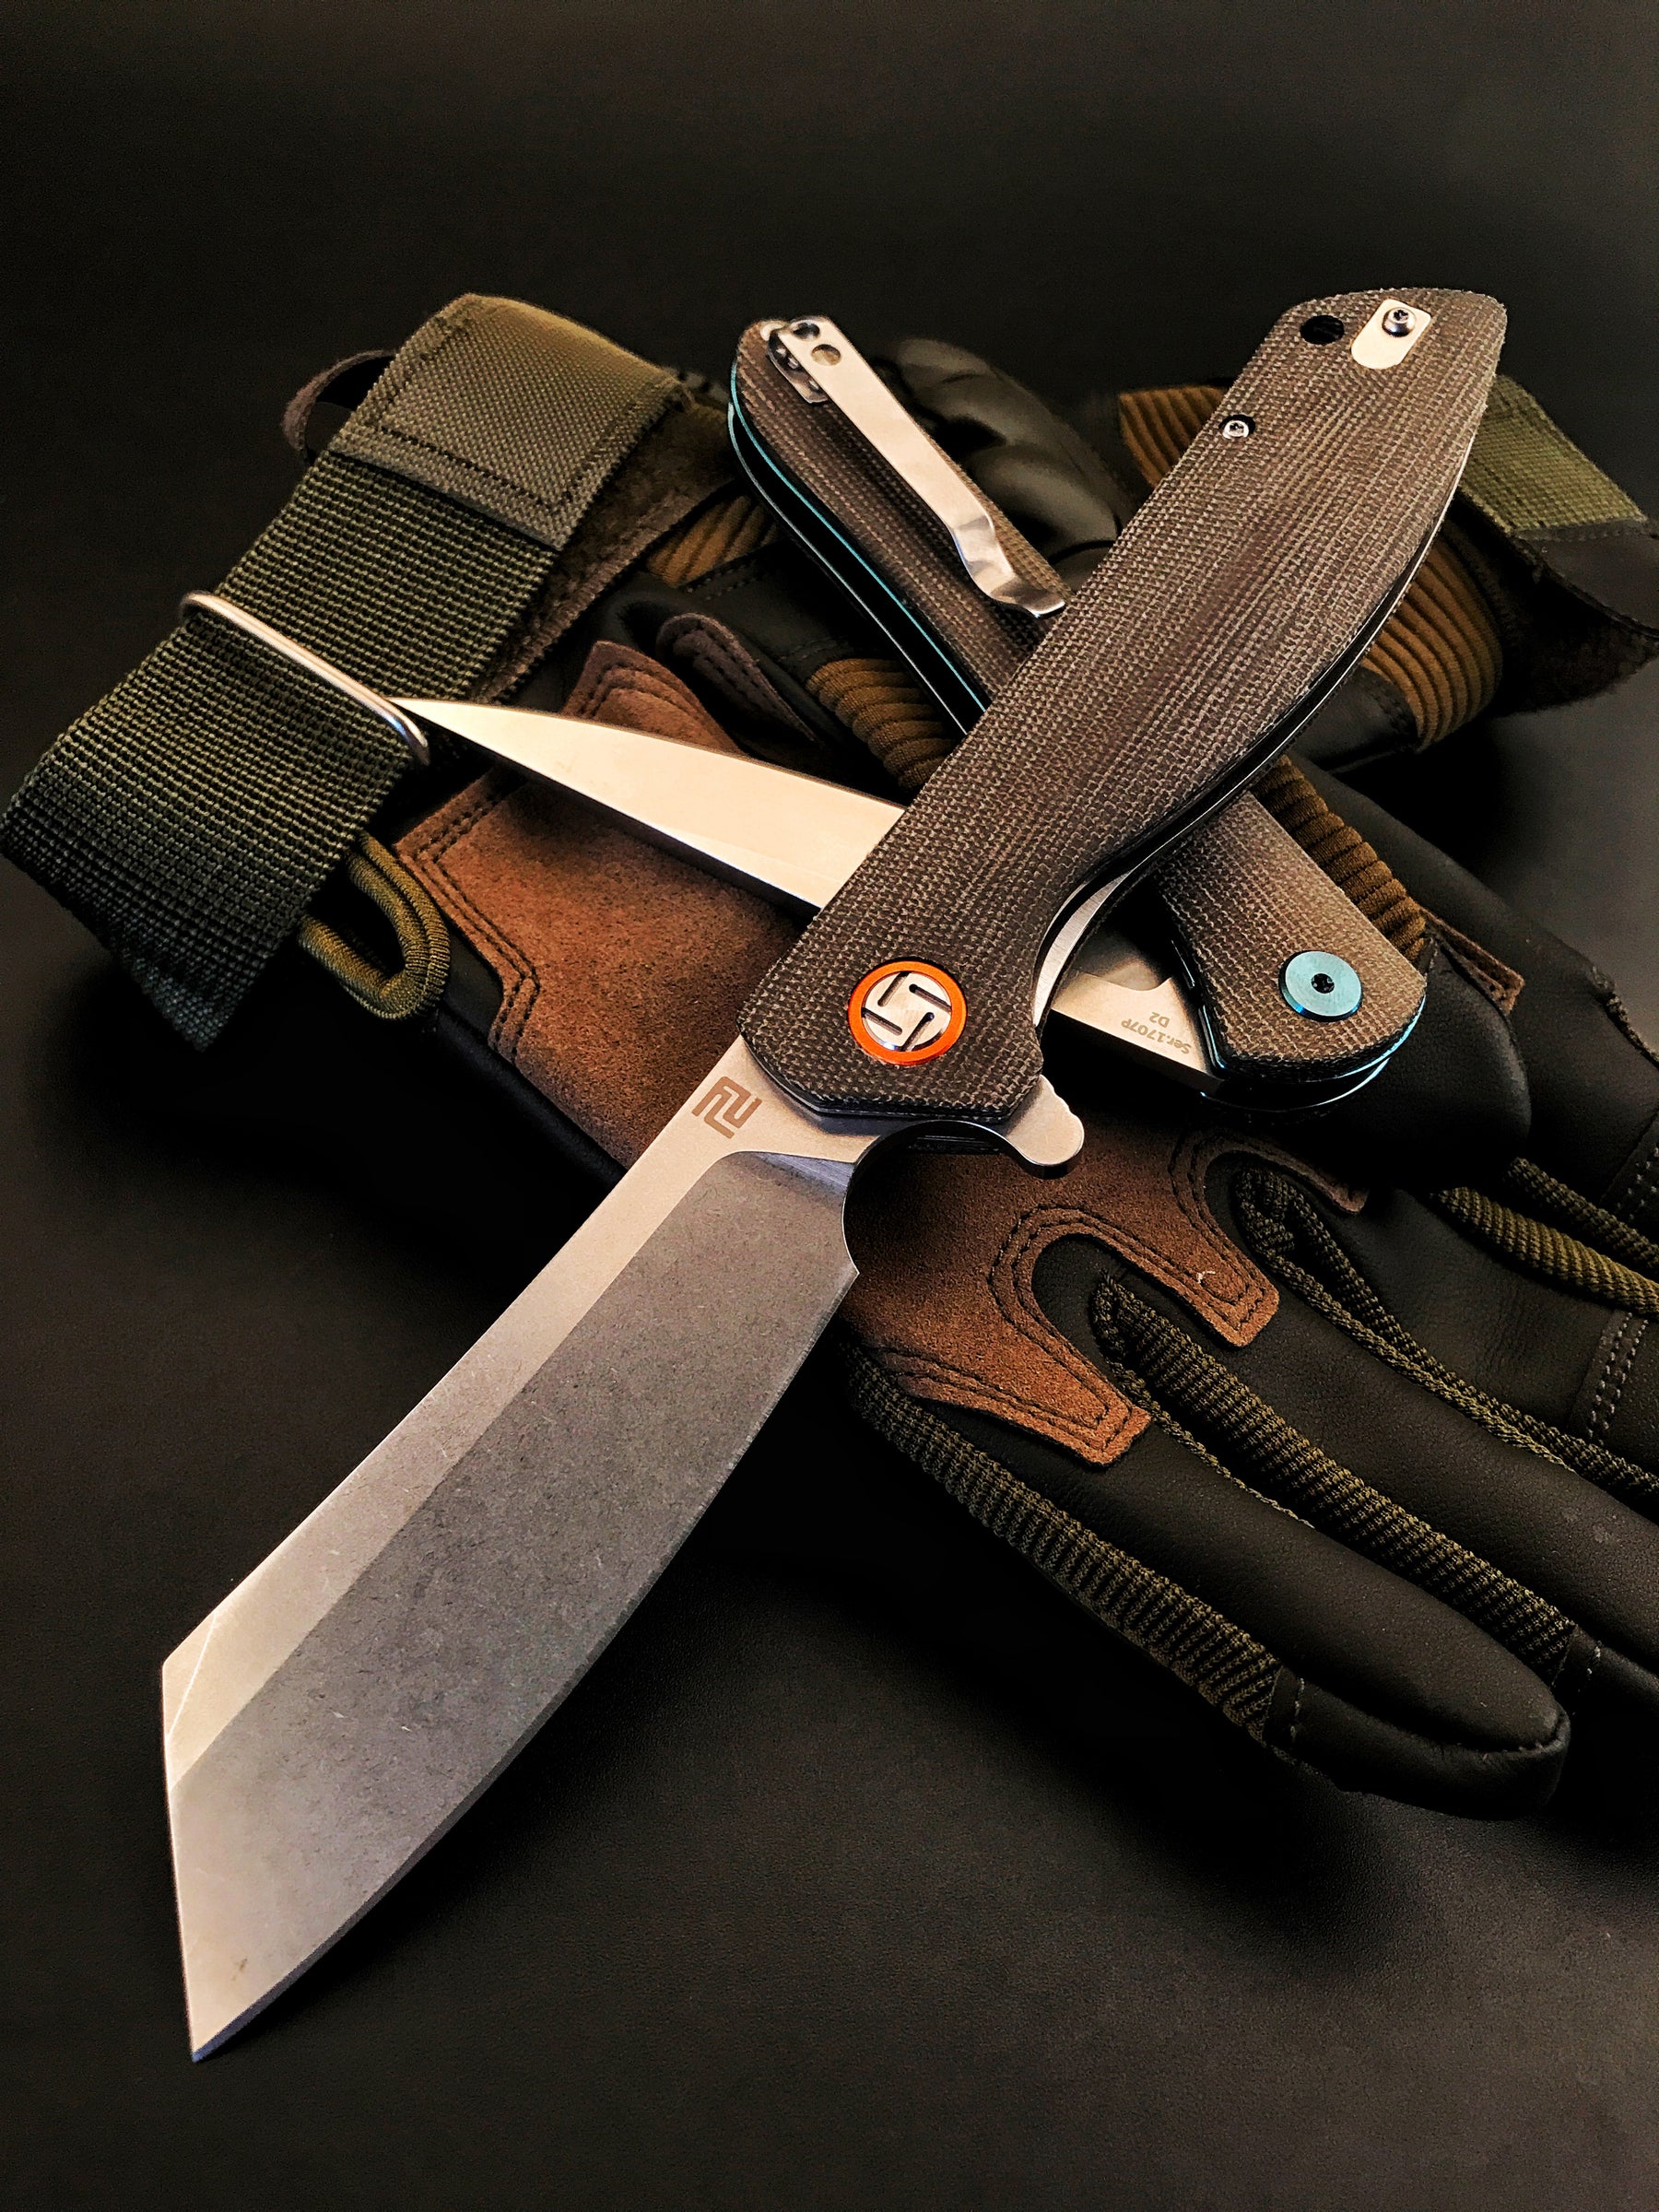 Artisan Cutlery Tomahawk ATZ-1815P D2 Blade Micarta Handle Folding Knives